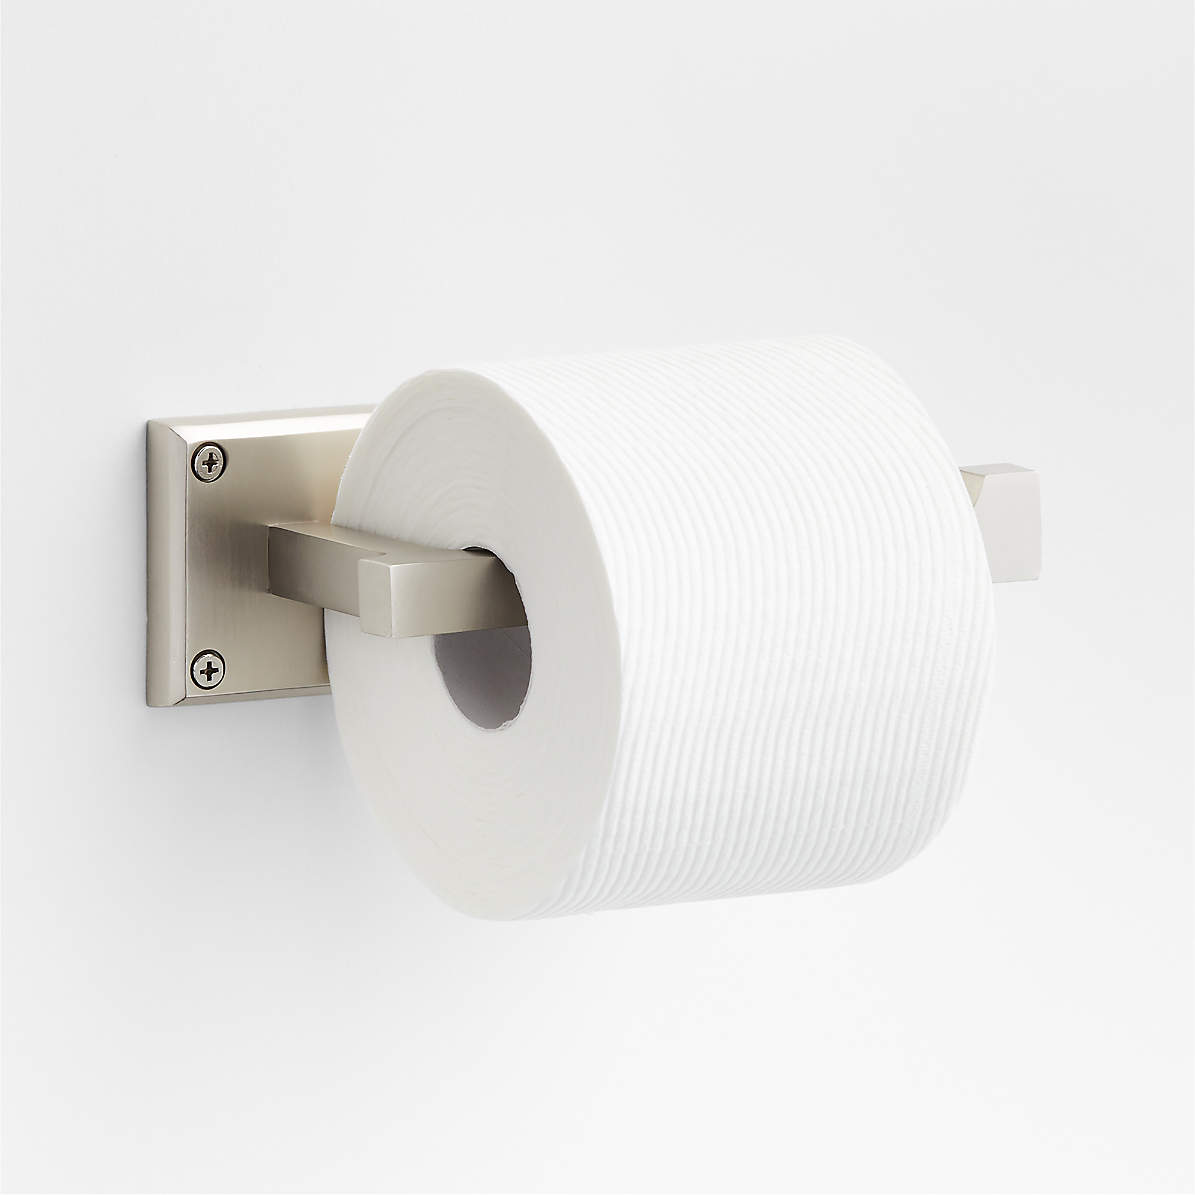 https://cb.scene7.com/is/image/Crate/SQEdgeNickelToiletPprHldAVSSS23/$web_pdp_main_carousel_zoom_med$/230220165535/square-edge-nickel-wall-mounted-toilet-paper-holder.jpg